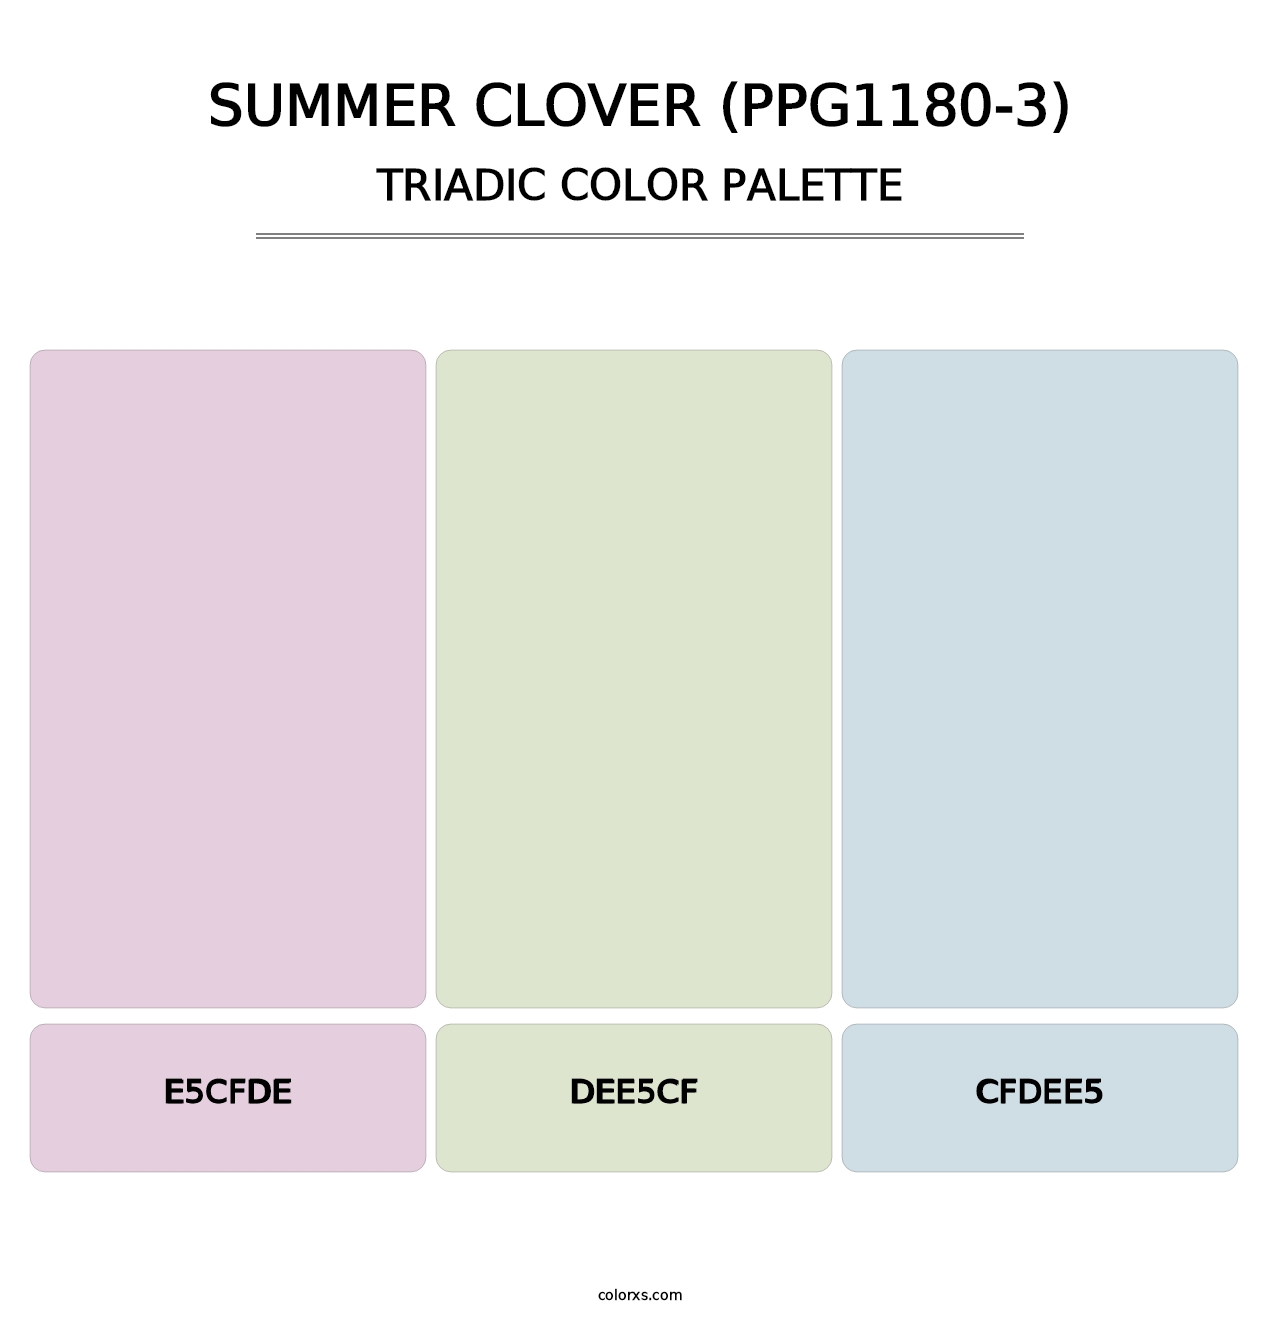 Summer Clover (PPG1180-3) - Triadic Color Palette